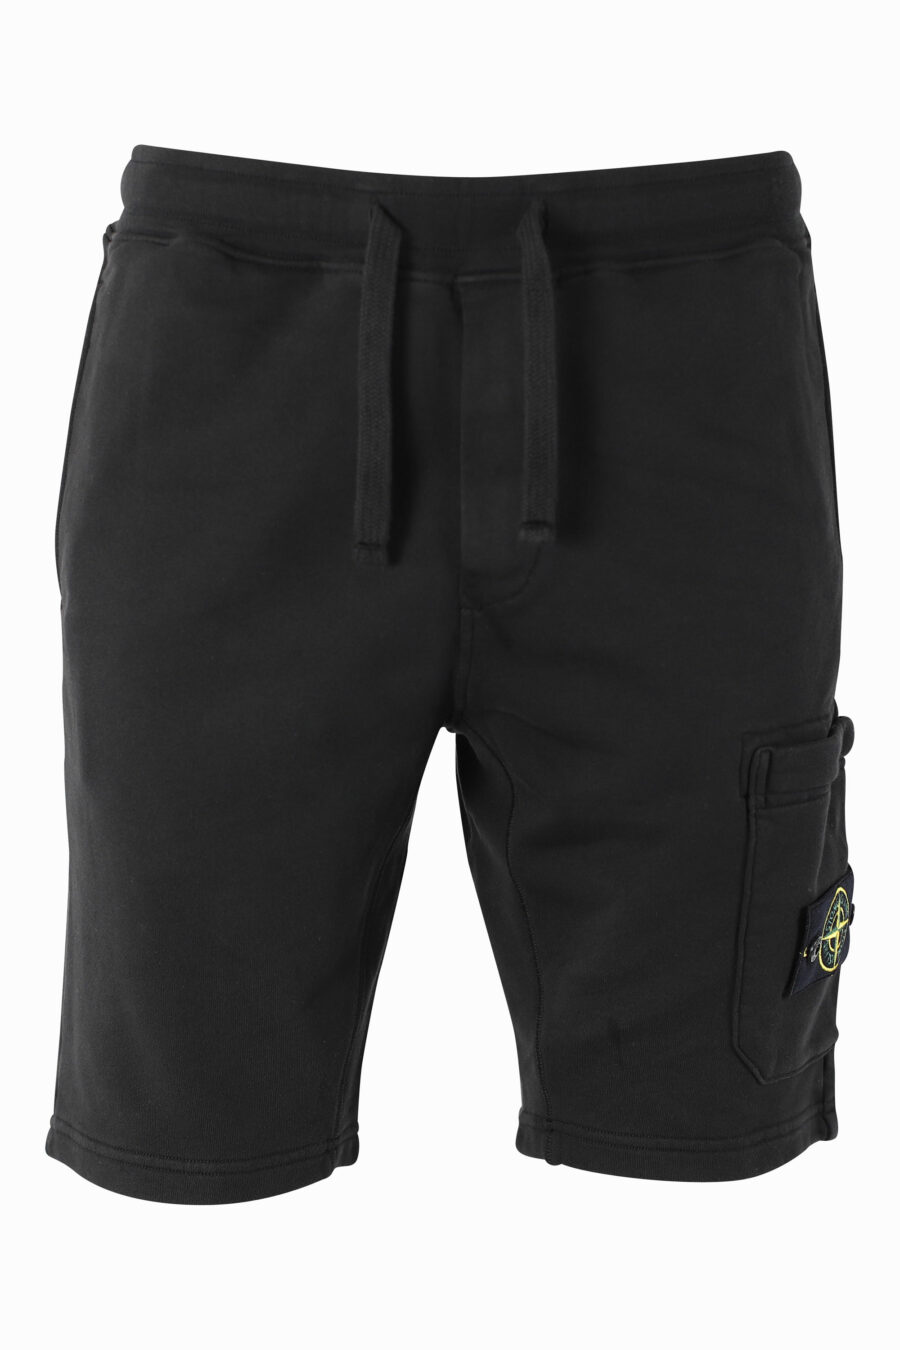 Pantalón corto negro con parche lateral - IMG 1009